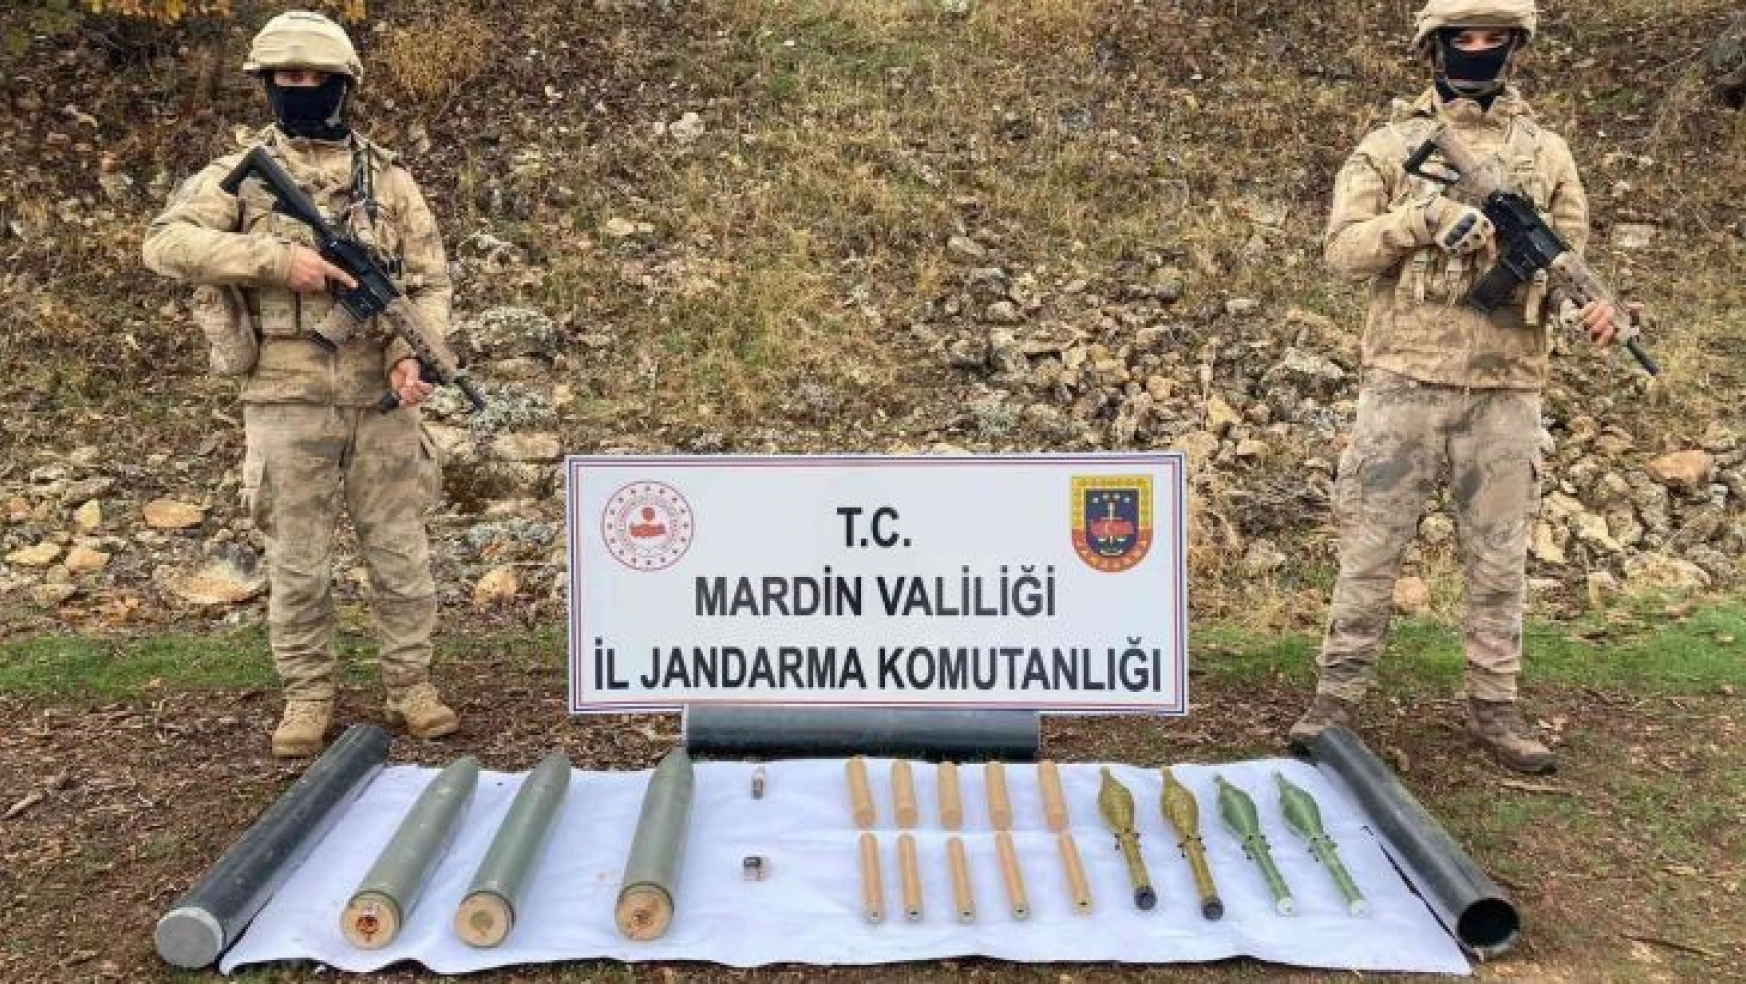 Mardin'de arazide terör örgütüne ait 11 adet roket mühimmatı ele geçirildi